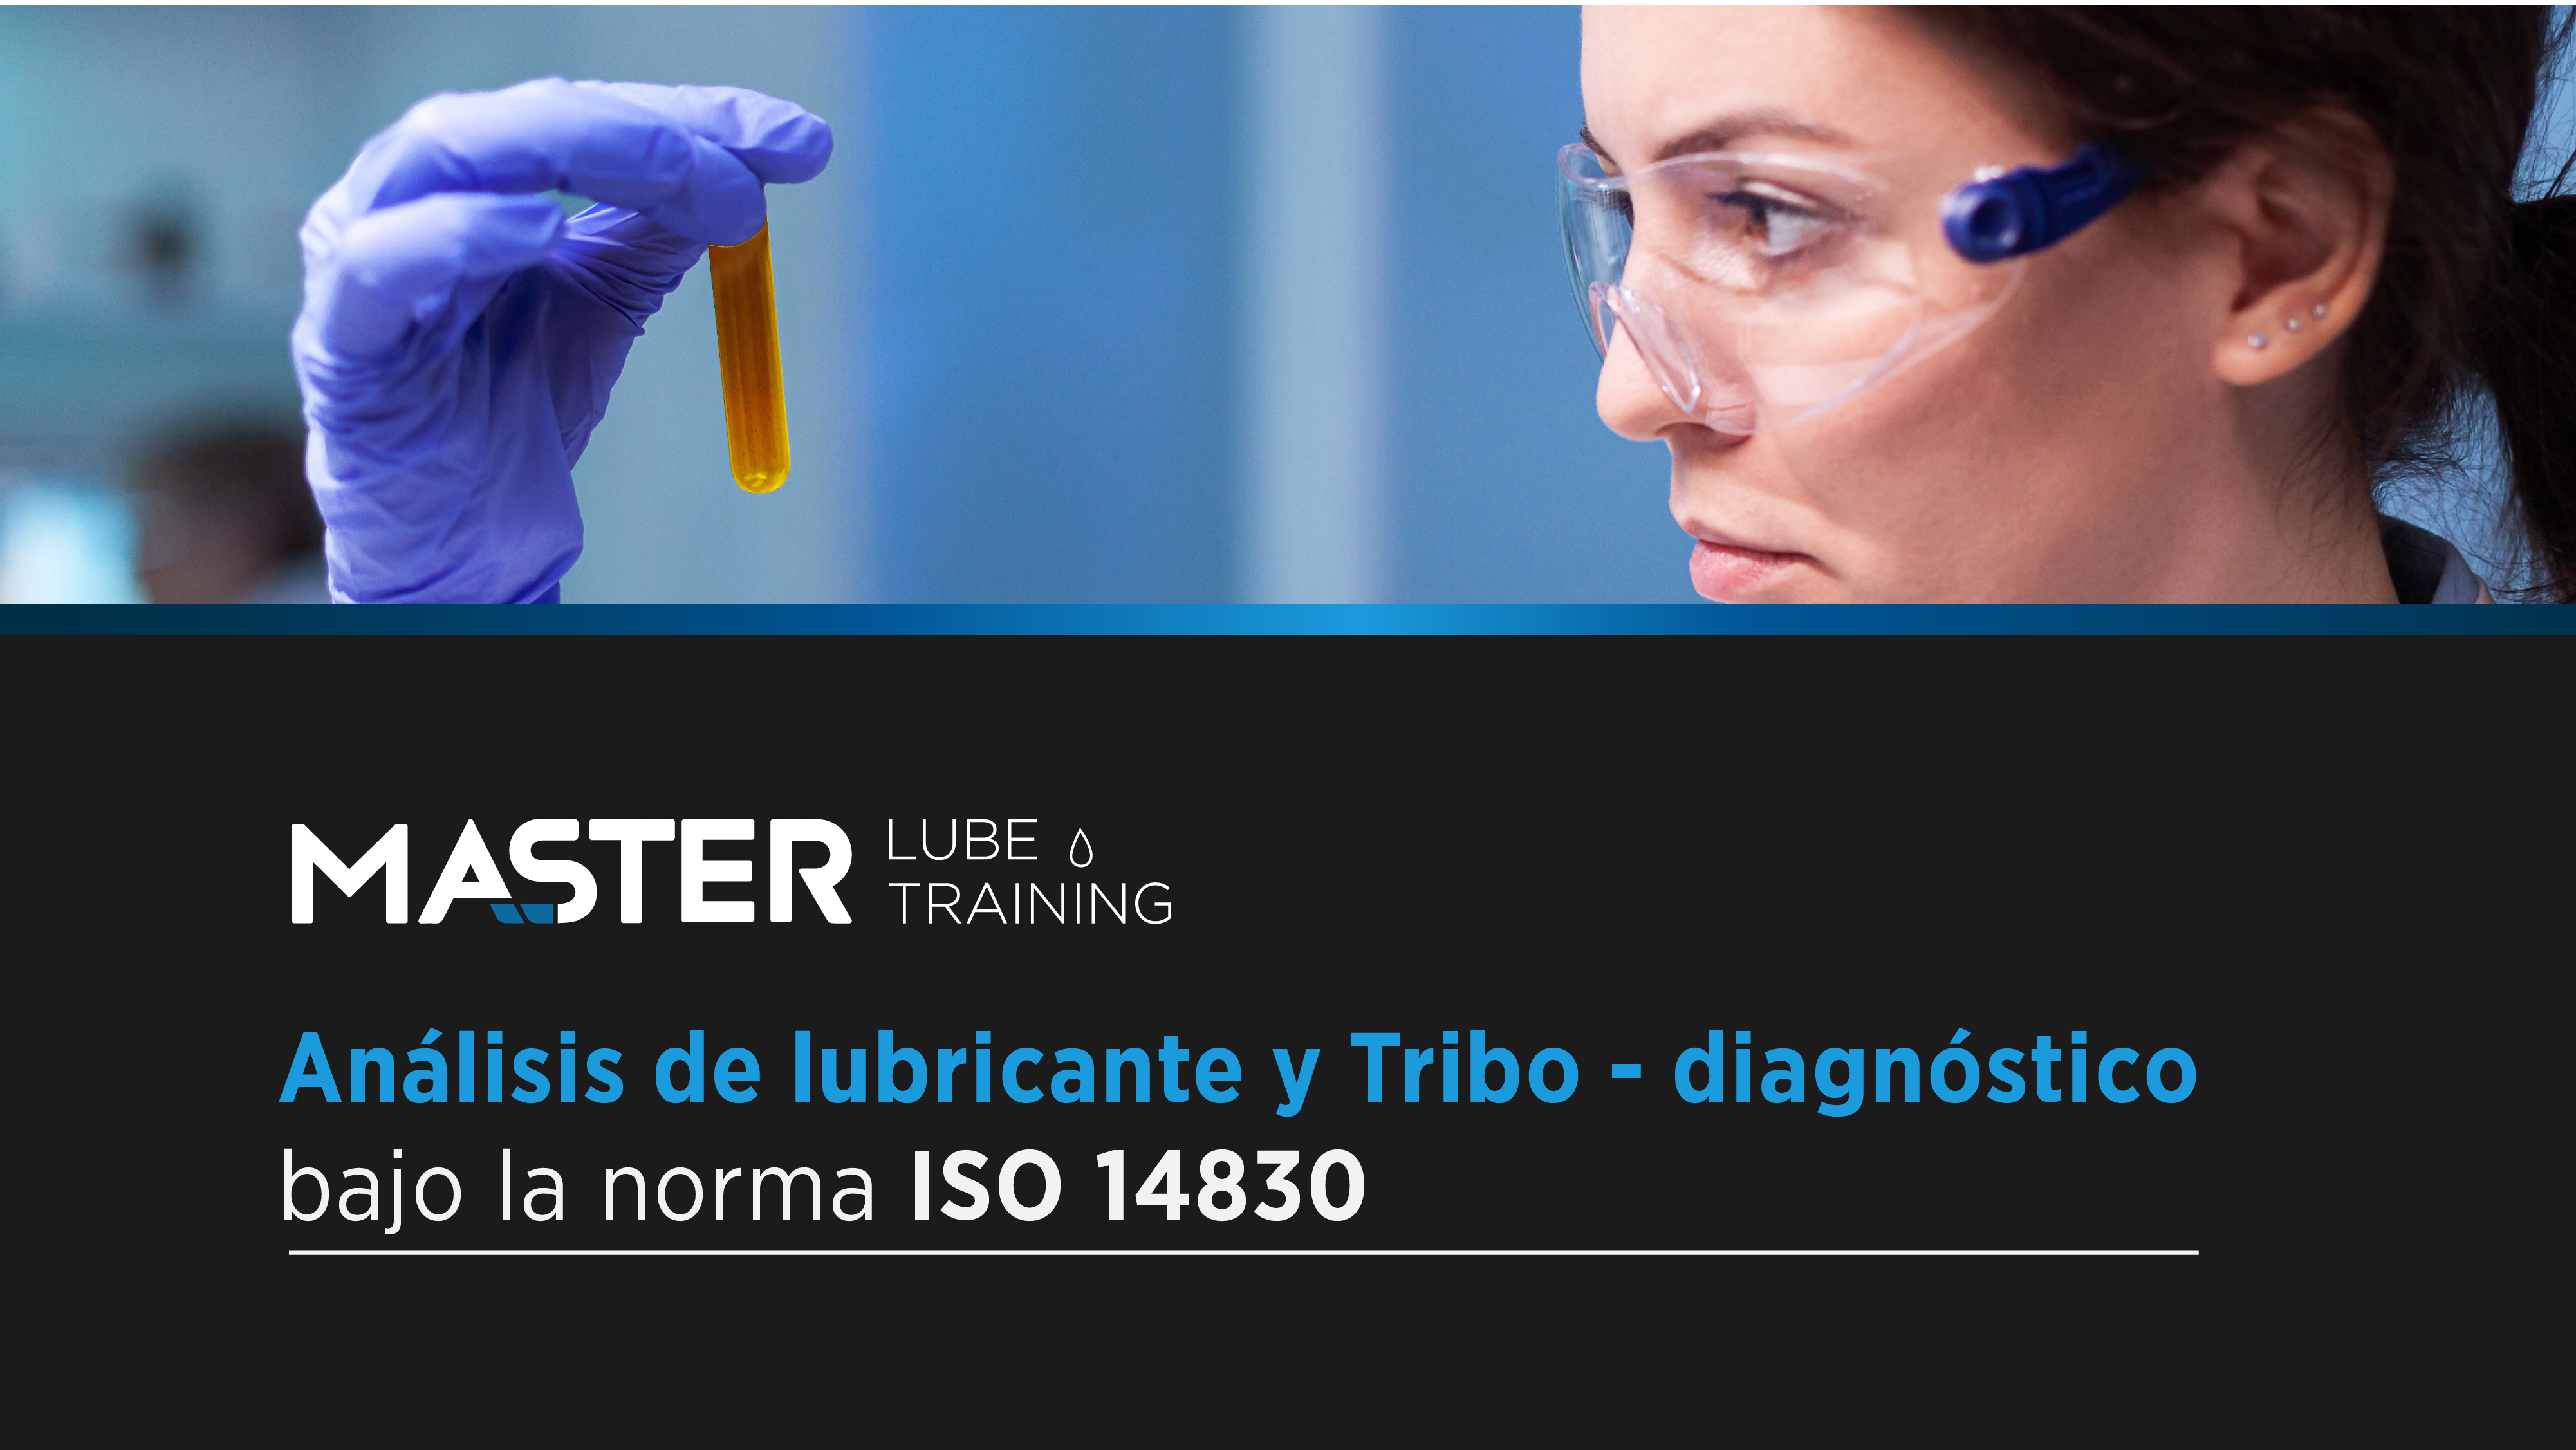 Course Image Master Lube Training - Análisis de Lubricante y Tribo- Diagnóstico Bajo Norma ISO 14830